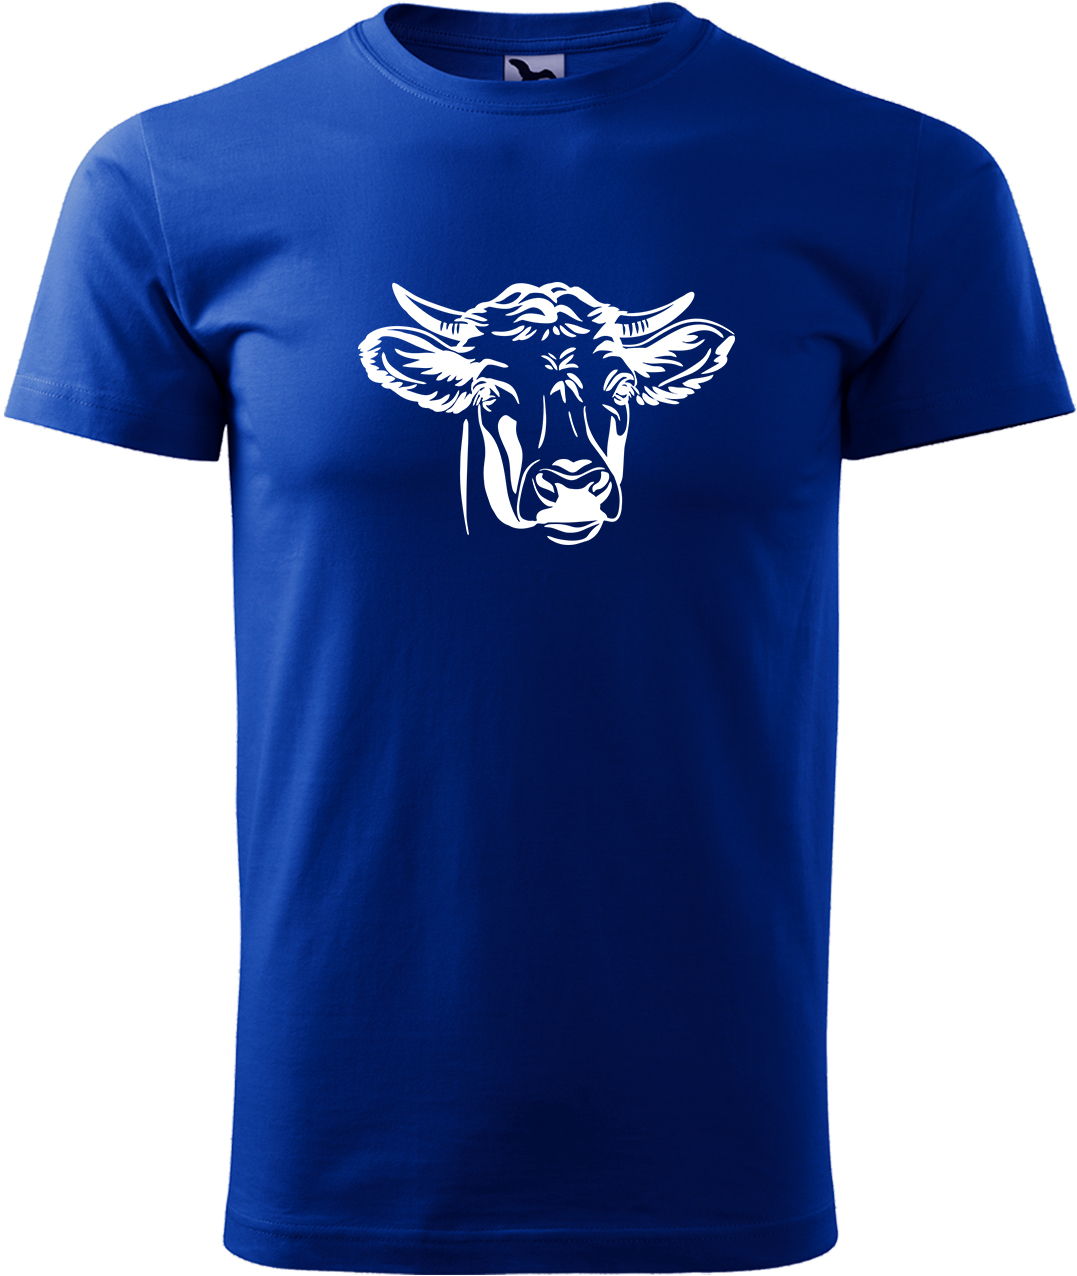 Pánské tričko s krávou - Hlava krávy Velikost: XL, Barva: Královská modrá (05), Střih: pánský